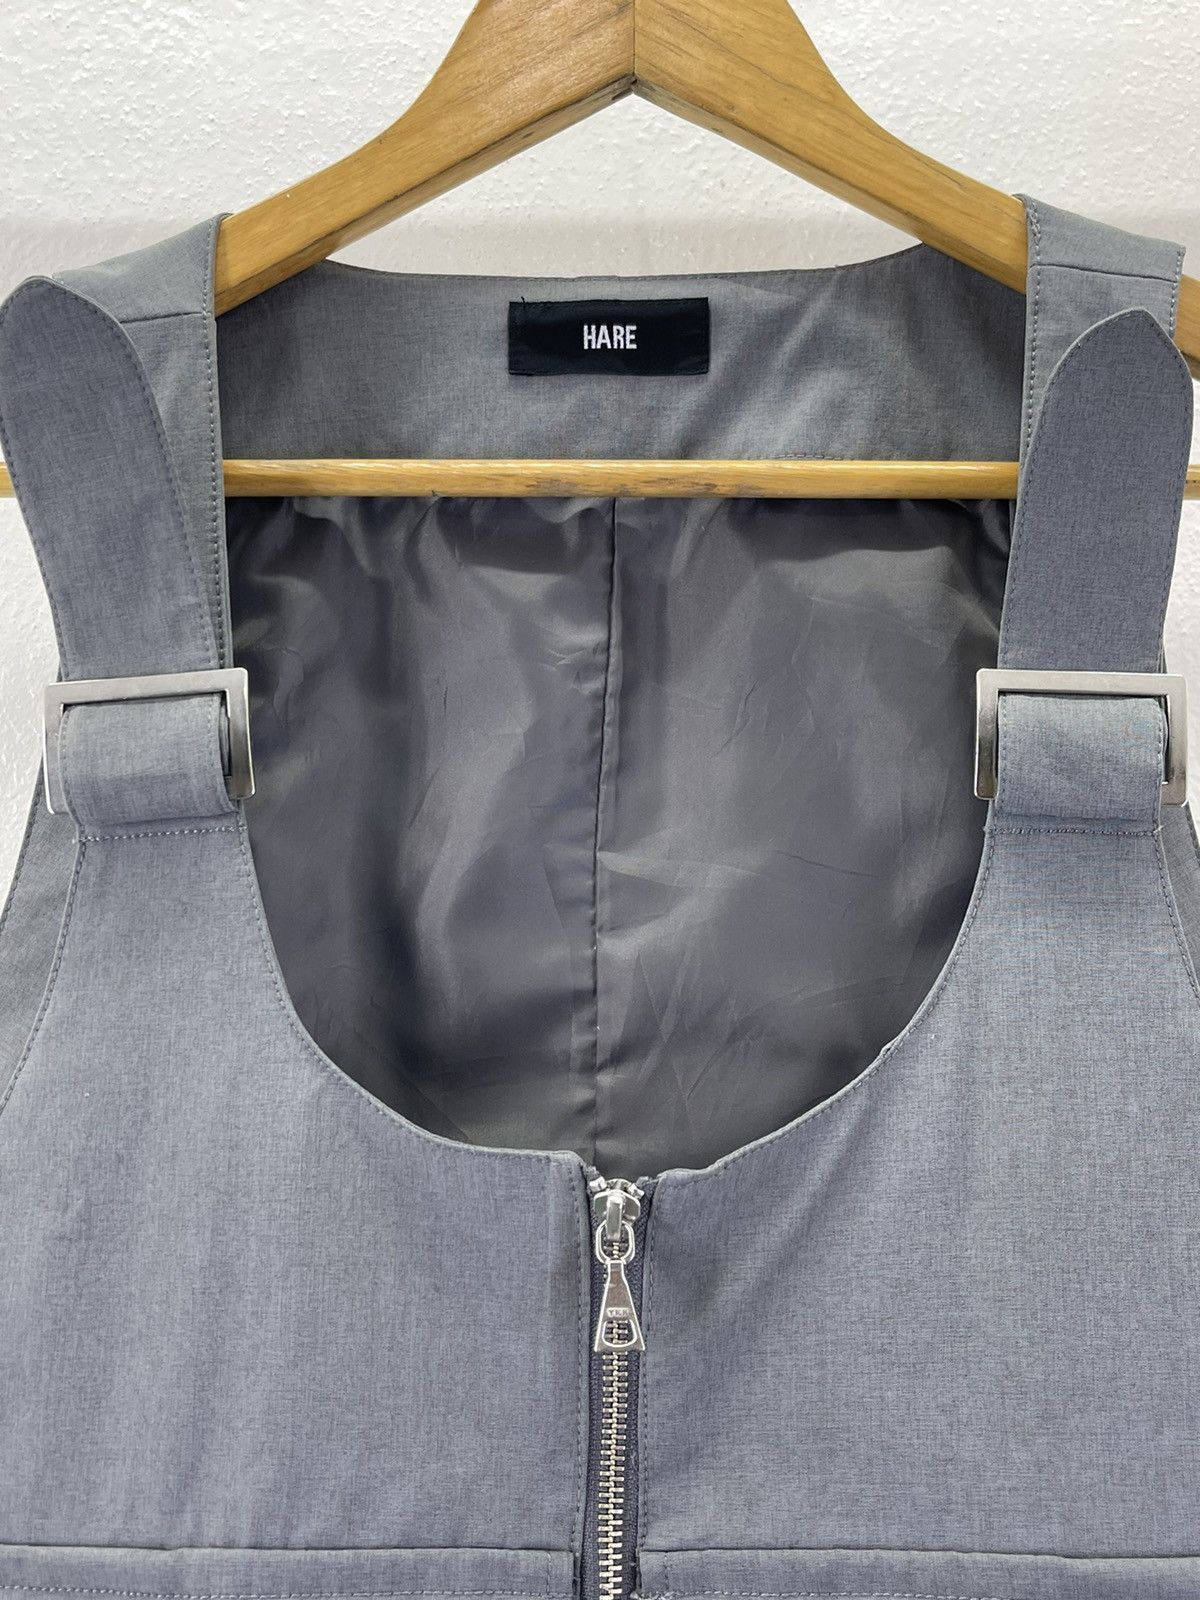 Tracey Vest Japanese Hare Assymmetric Tracey Vest Size US L / EU 52-54 / 3 - 6 Thumbnail